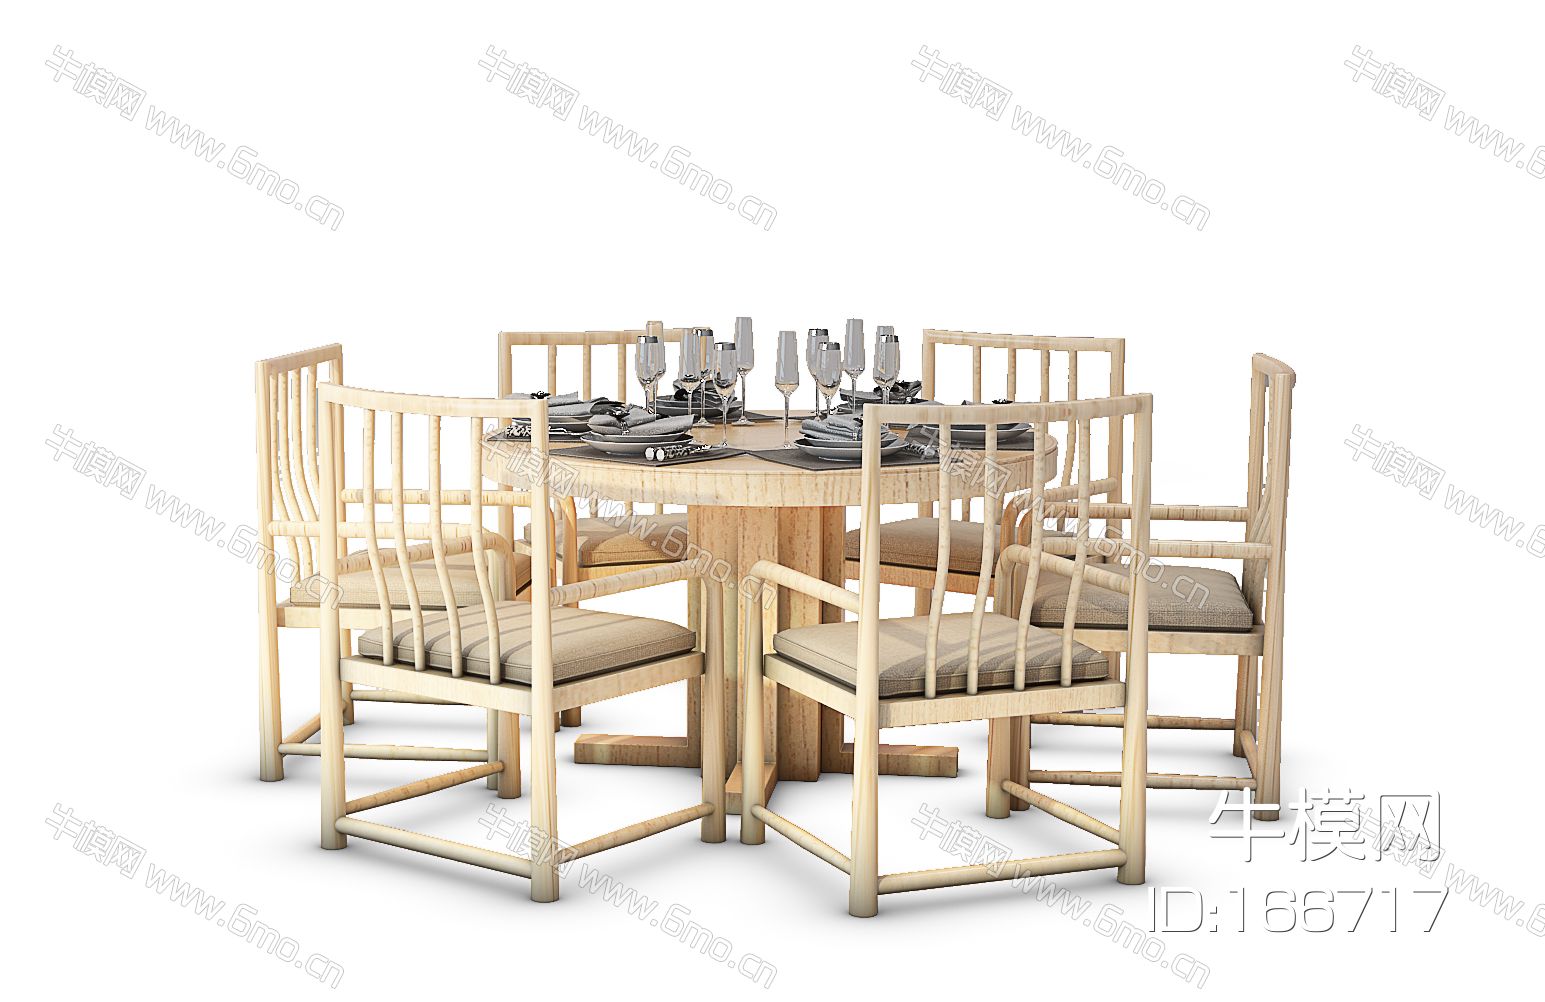 中式餐桌椅组合